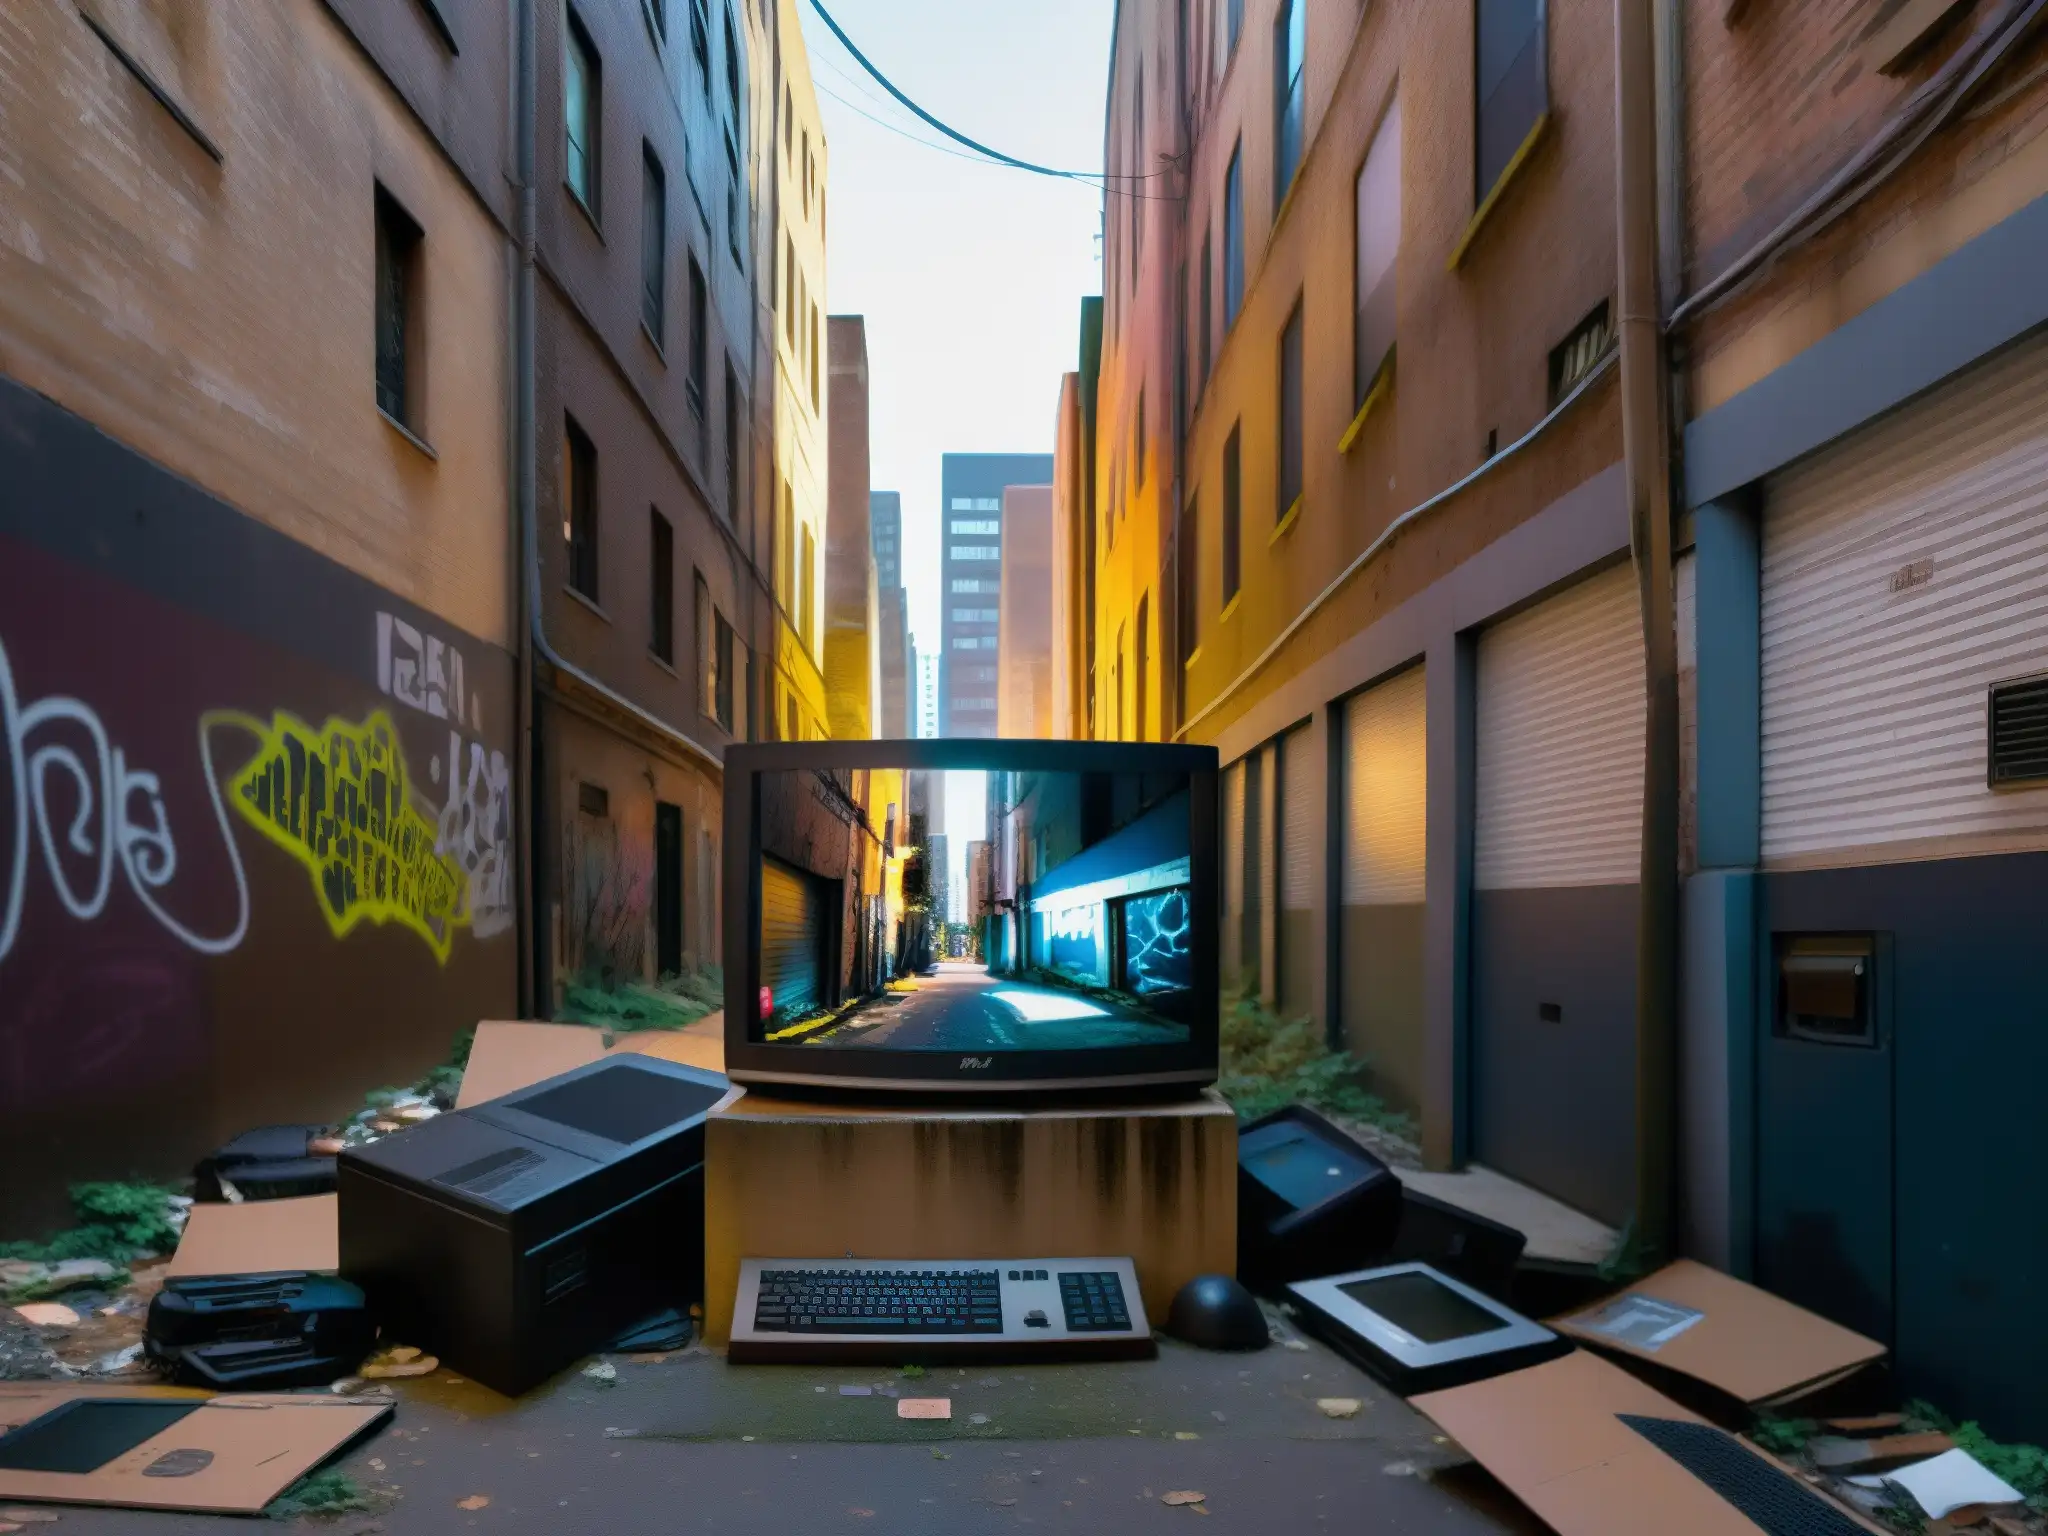 Alleyway urbano con graffiti, luces de calle y monitor abandonado